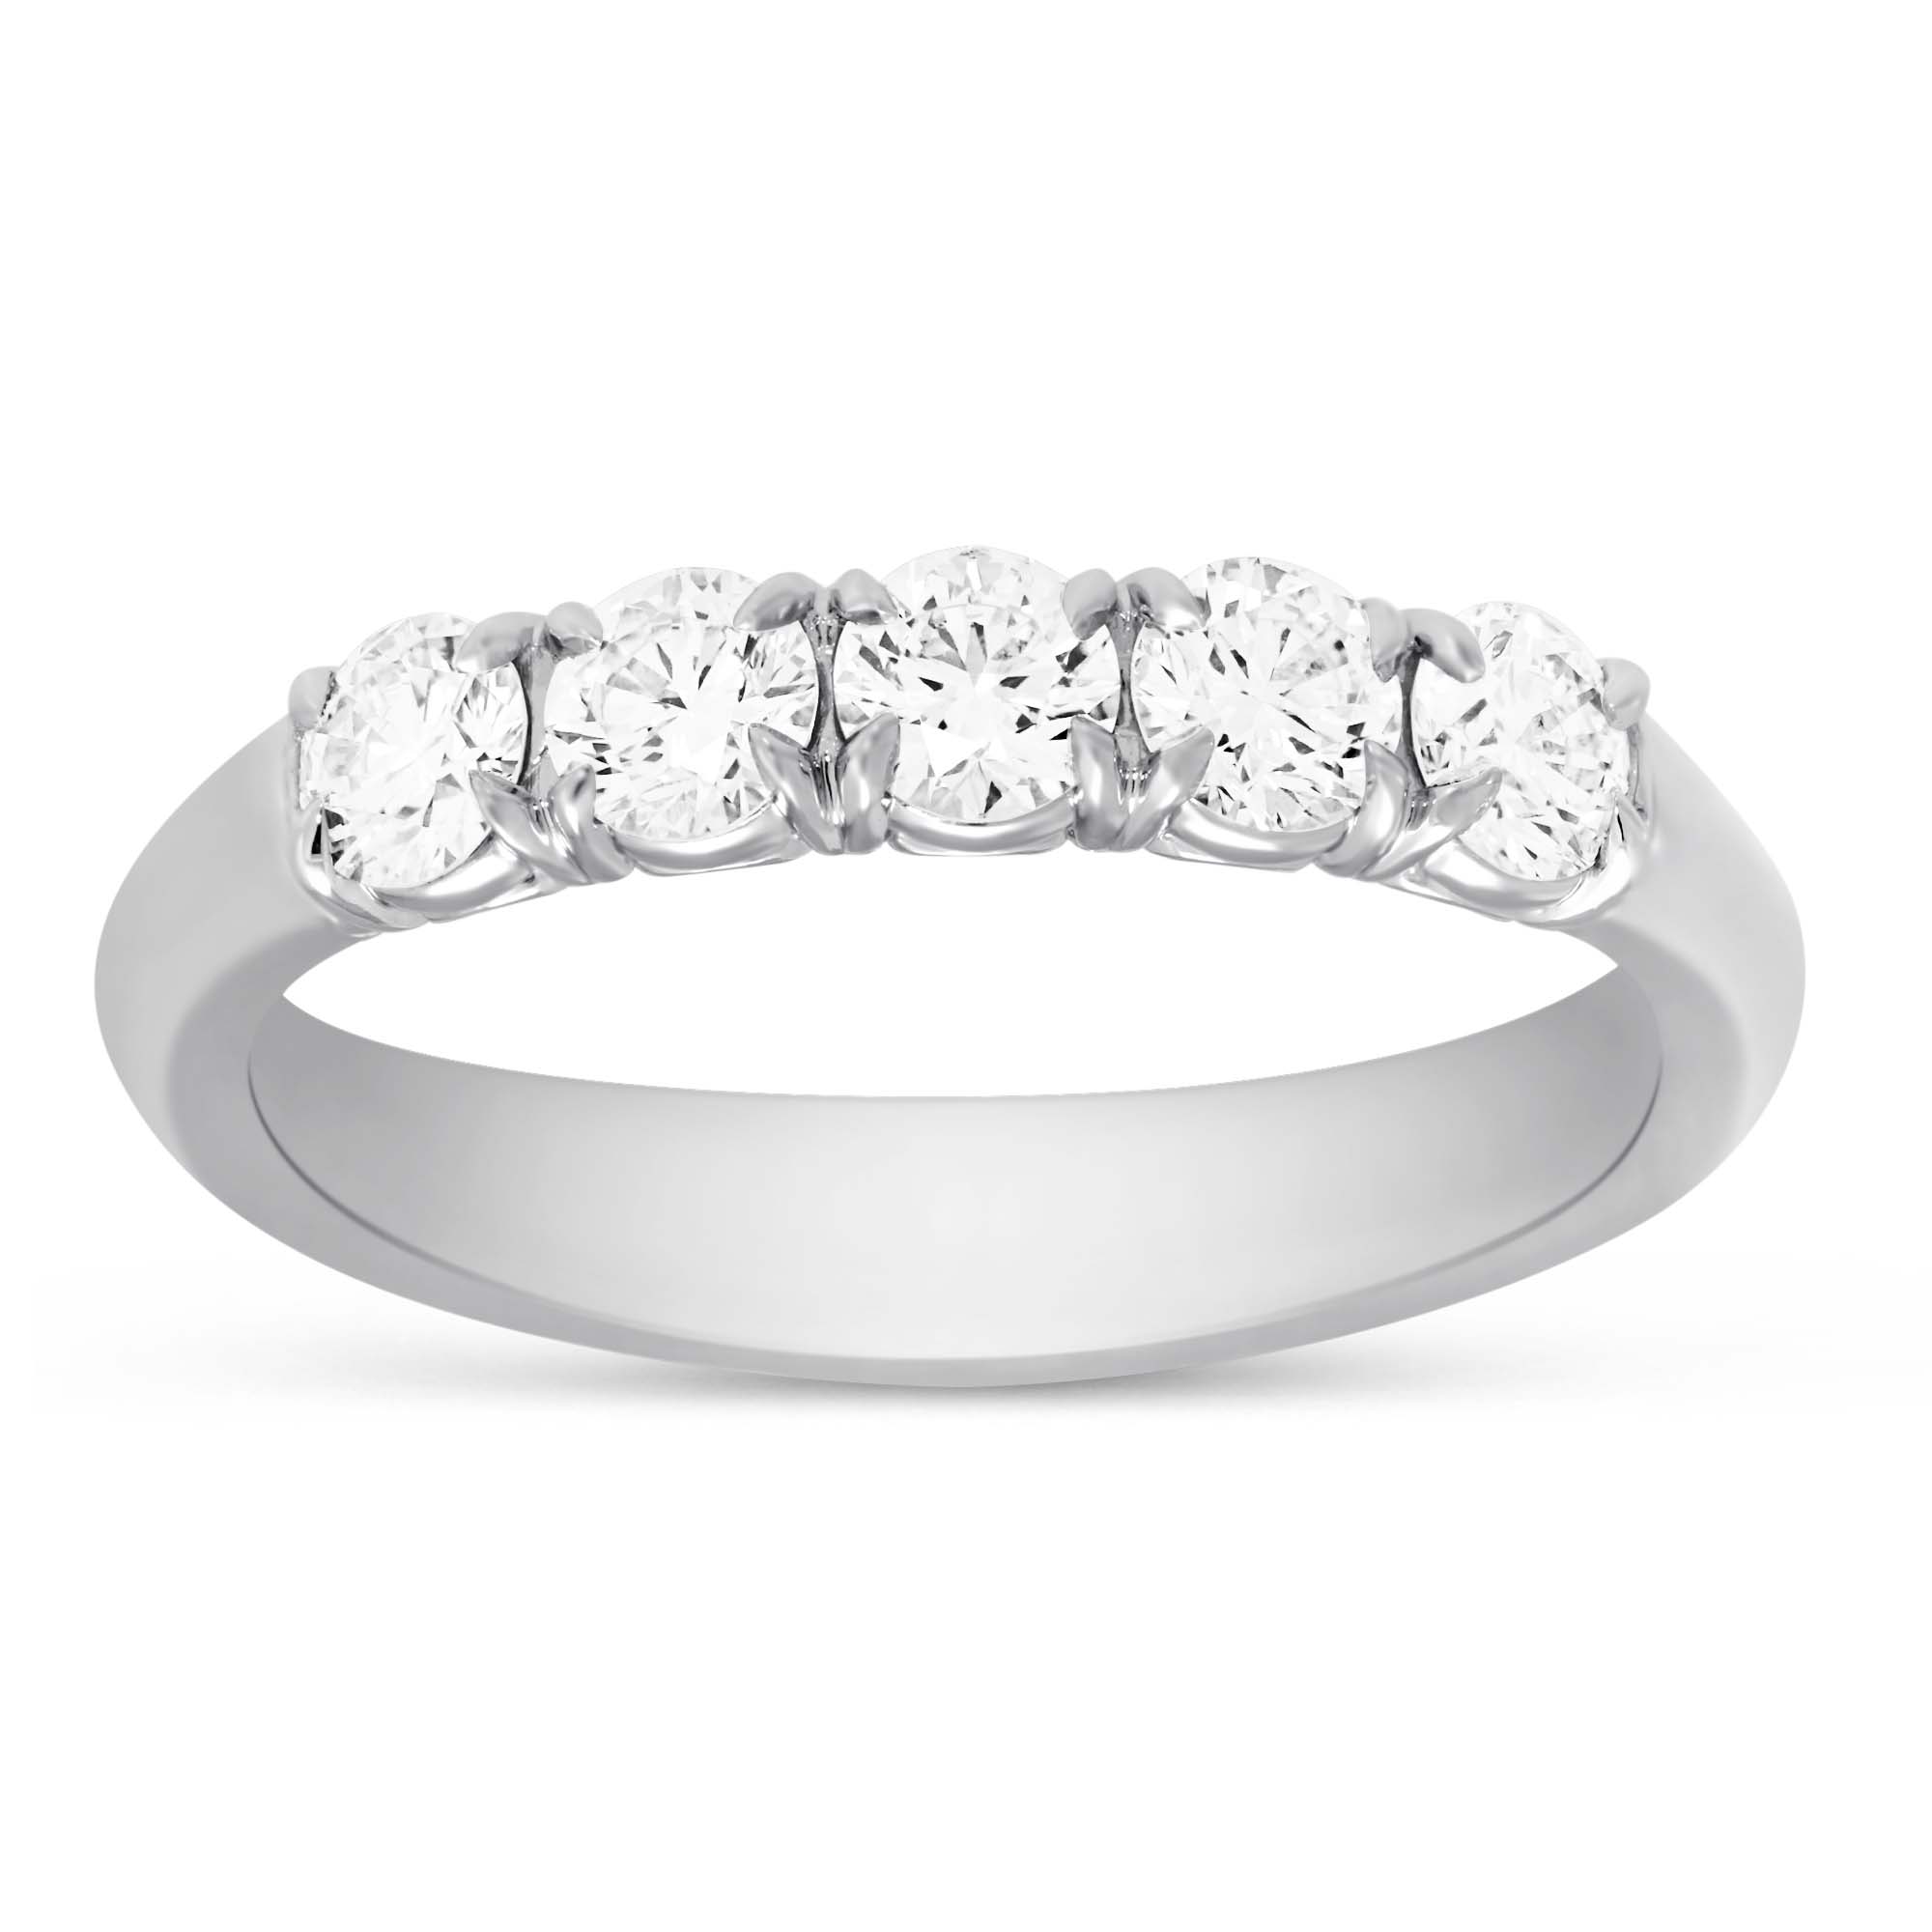 5 Diamond Wedding Band in White Gold | Borsheims